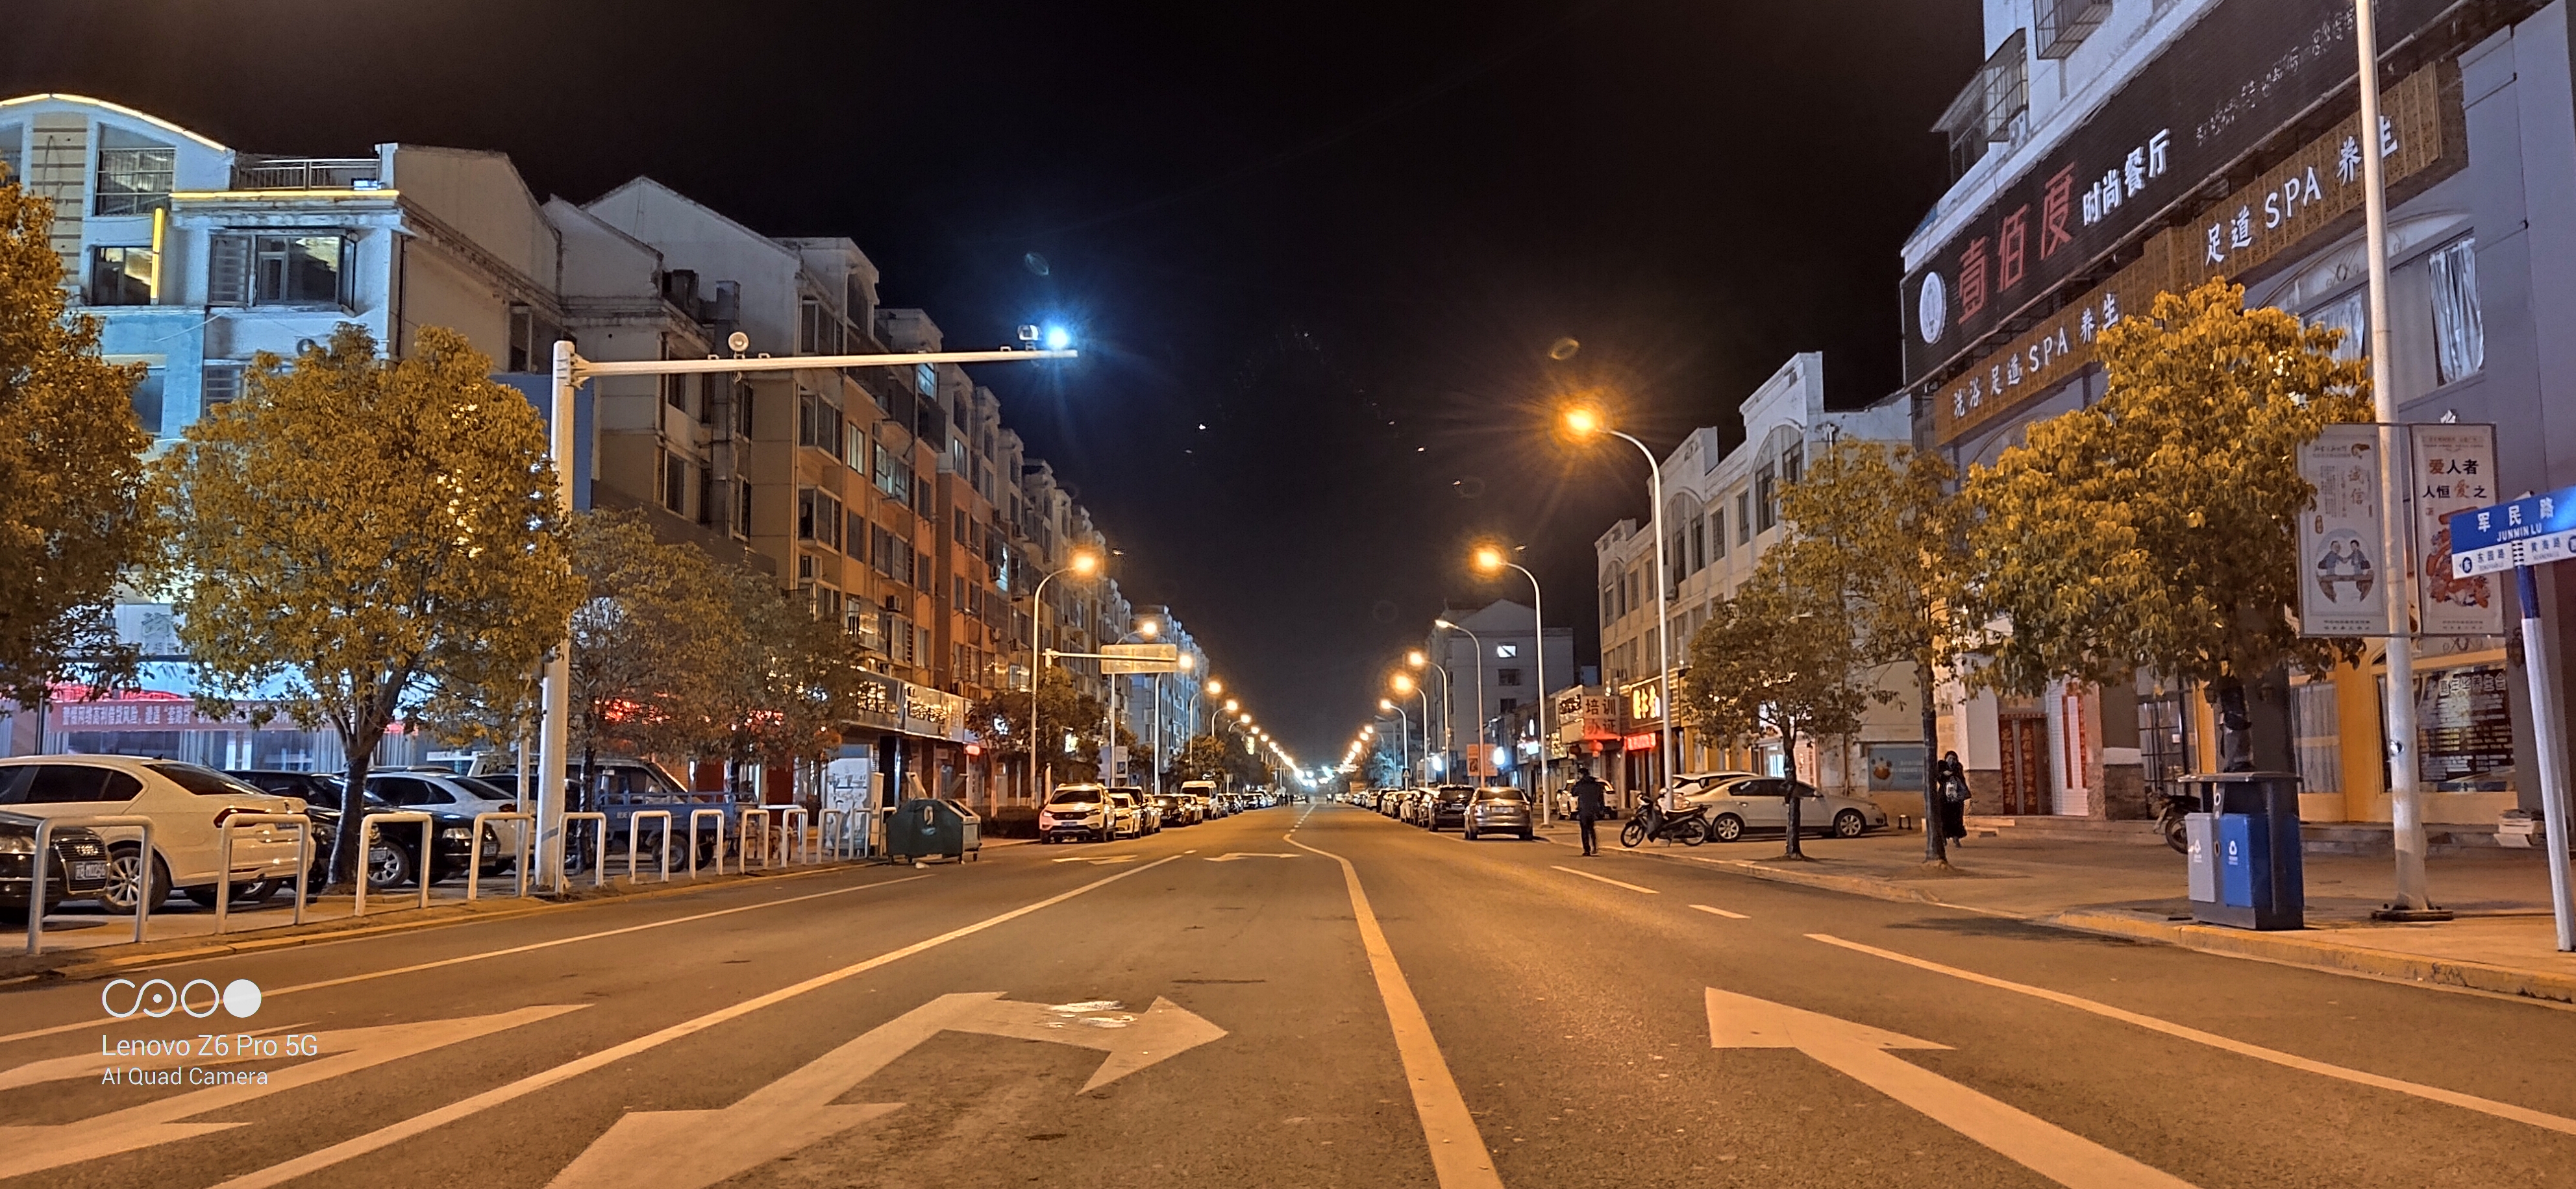 街道夜景图片安静图片